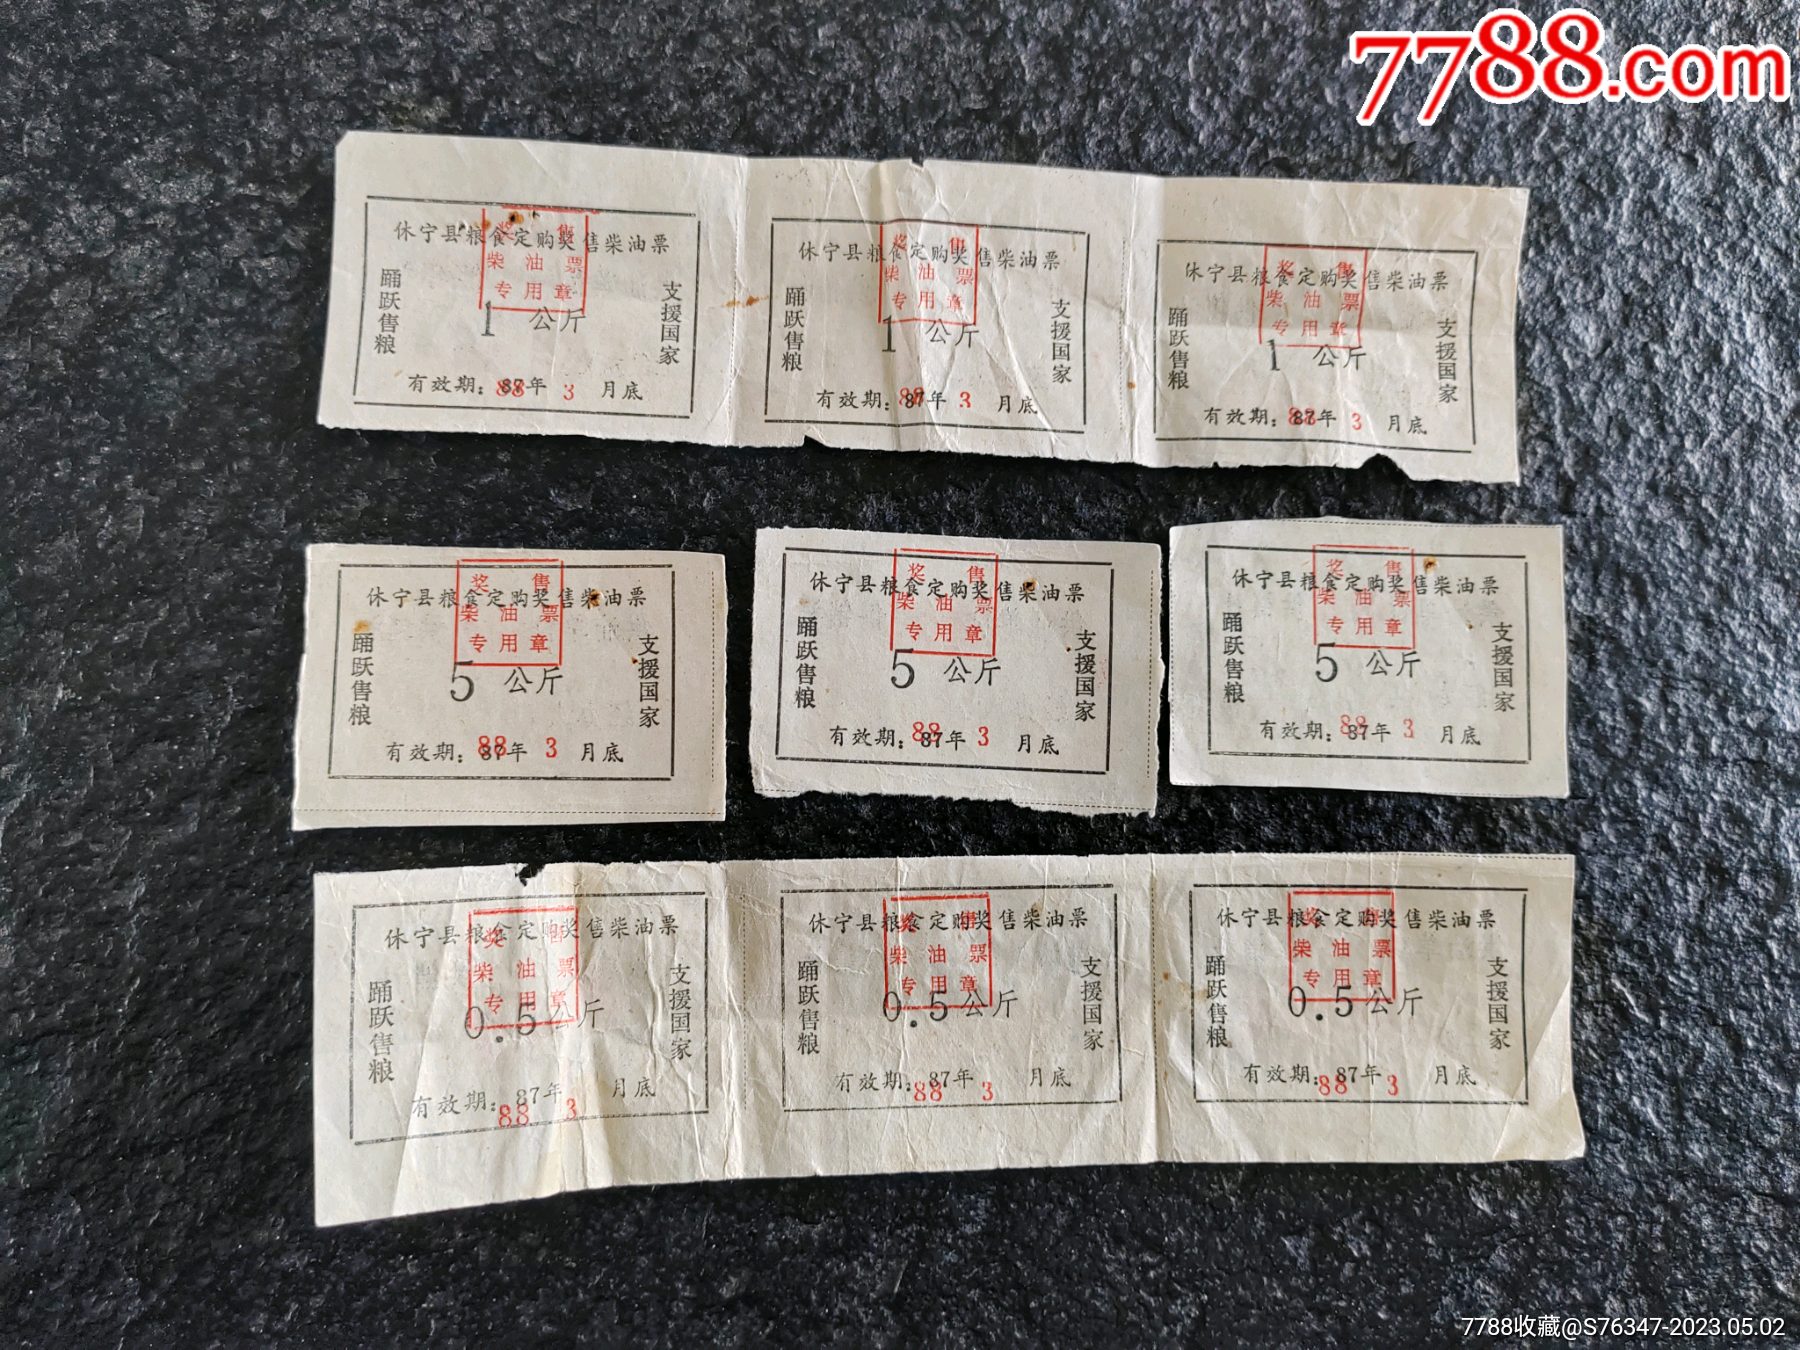 1988年休宁县粮食定购奖售柴油票3组(05,1,5公斤)